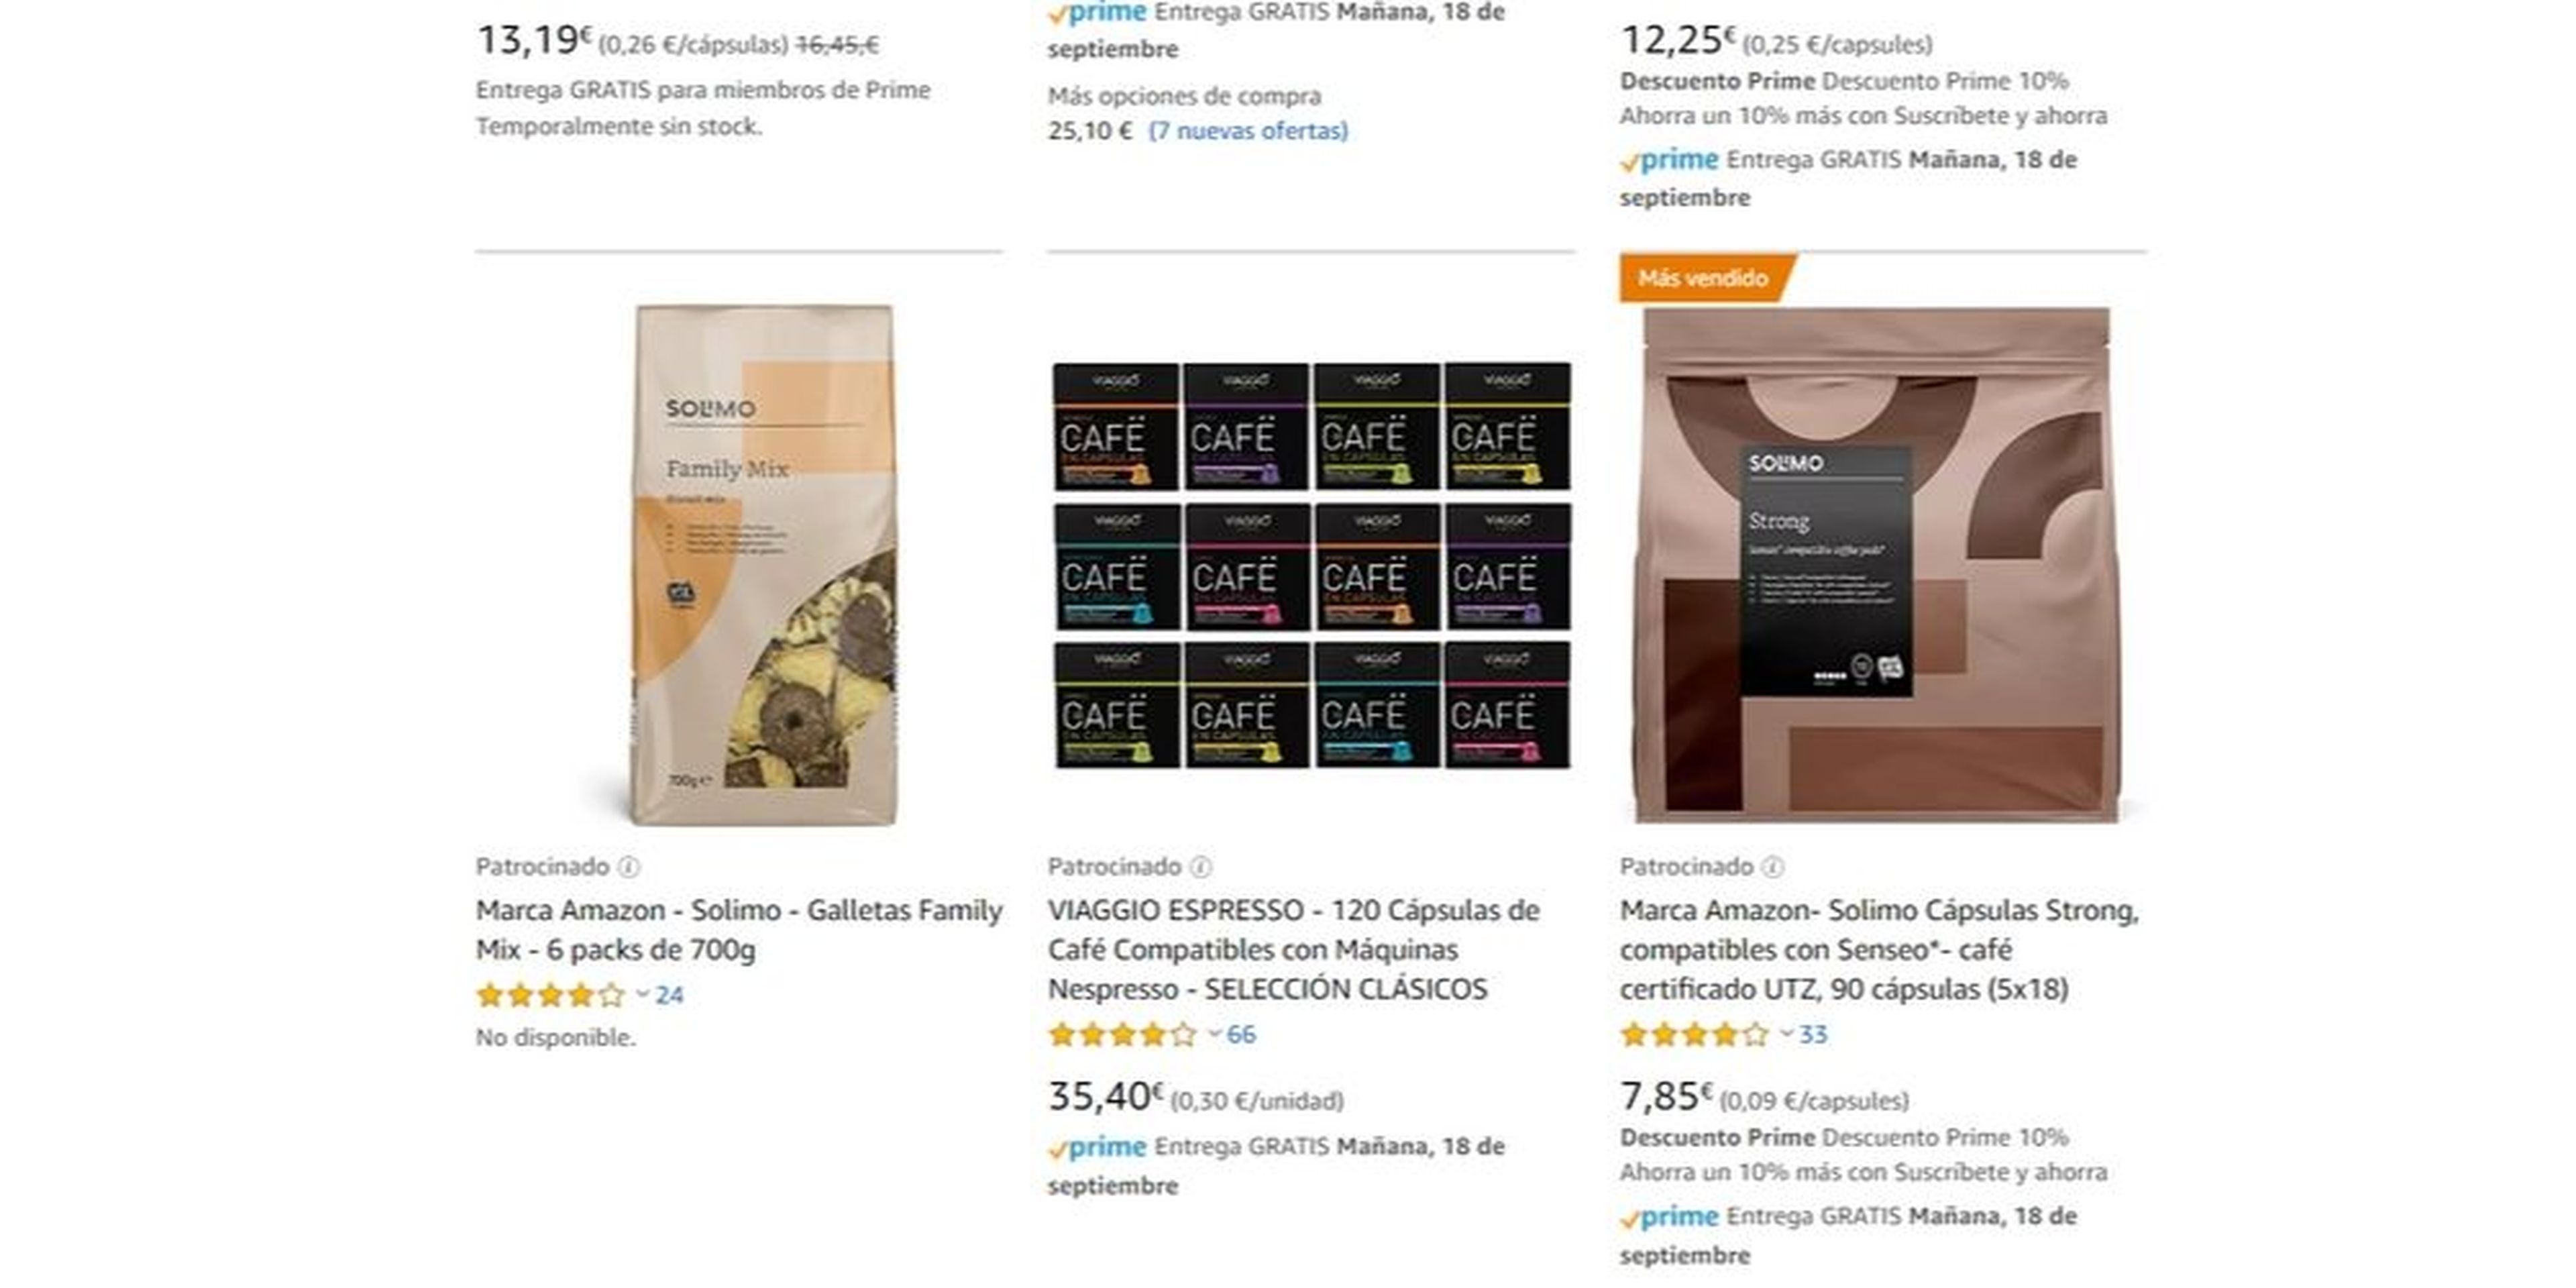 Amazon modificó los algoritmos de búsqueda en su plataforma para favorecer sus productos